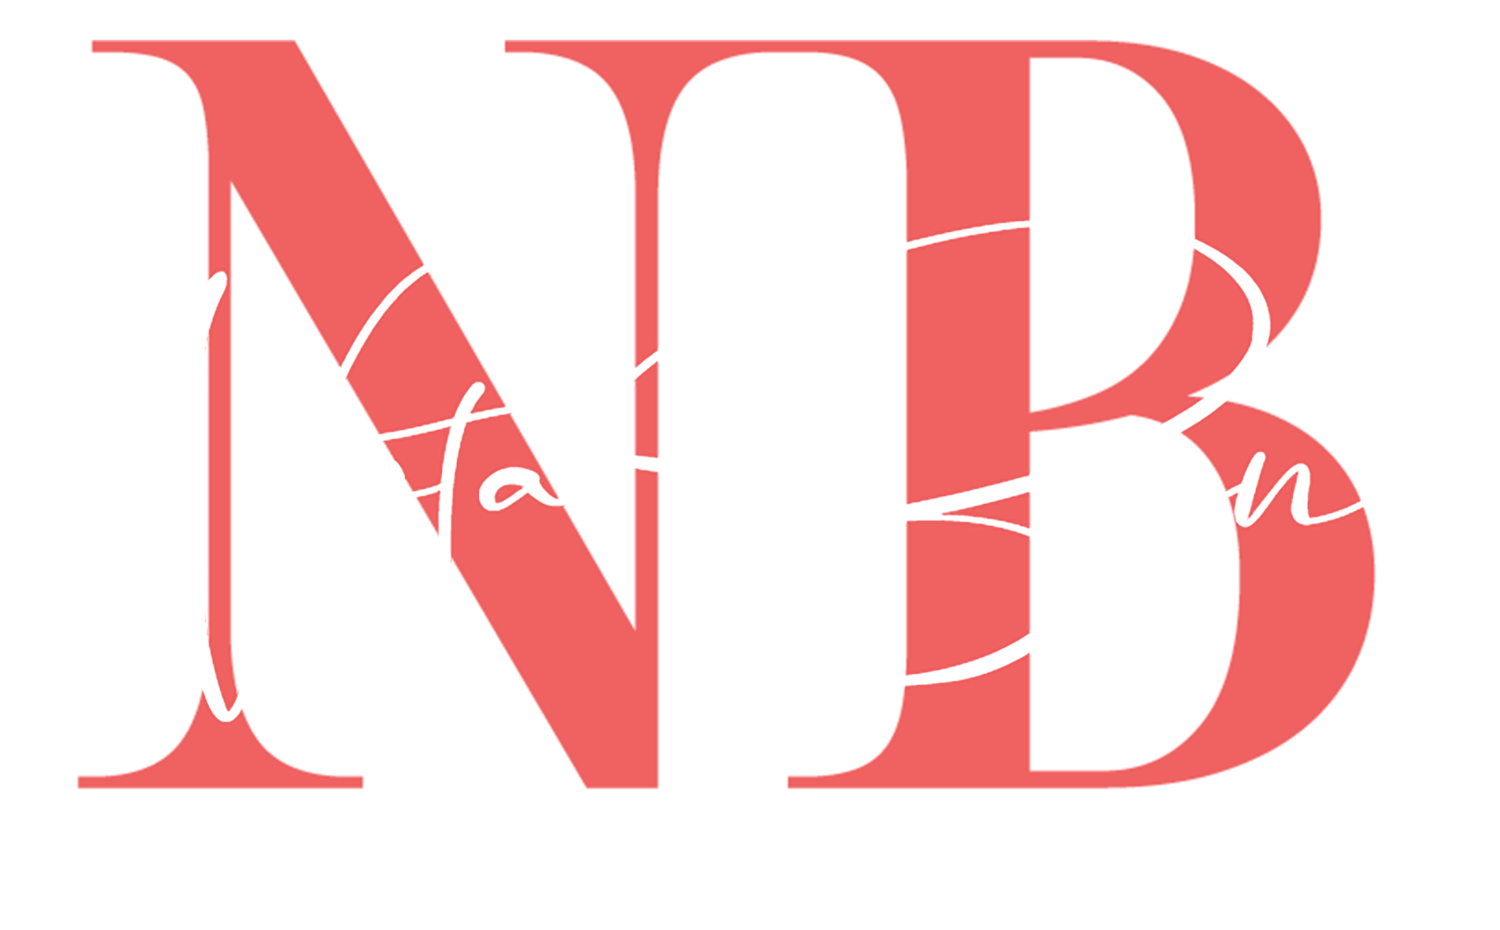 NOTA BENE - Natalya Belenko photography